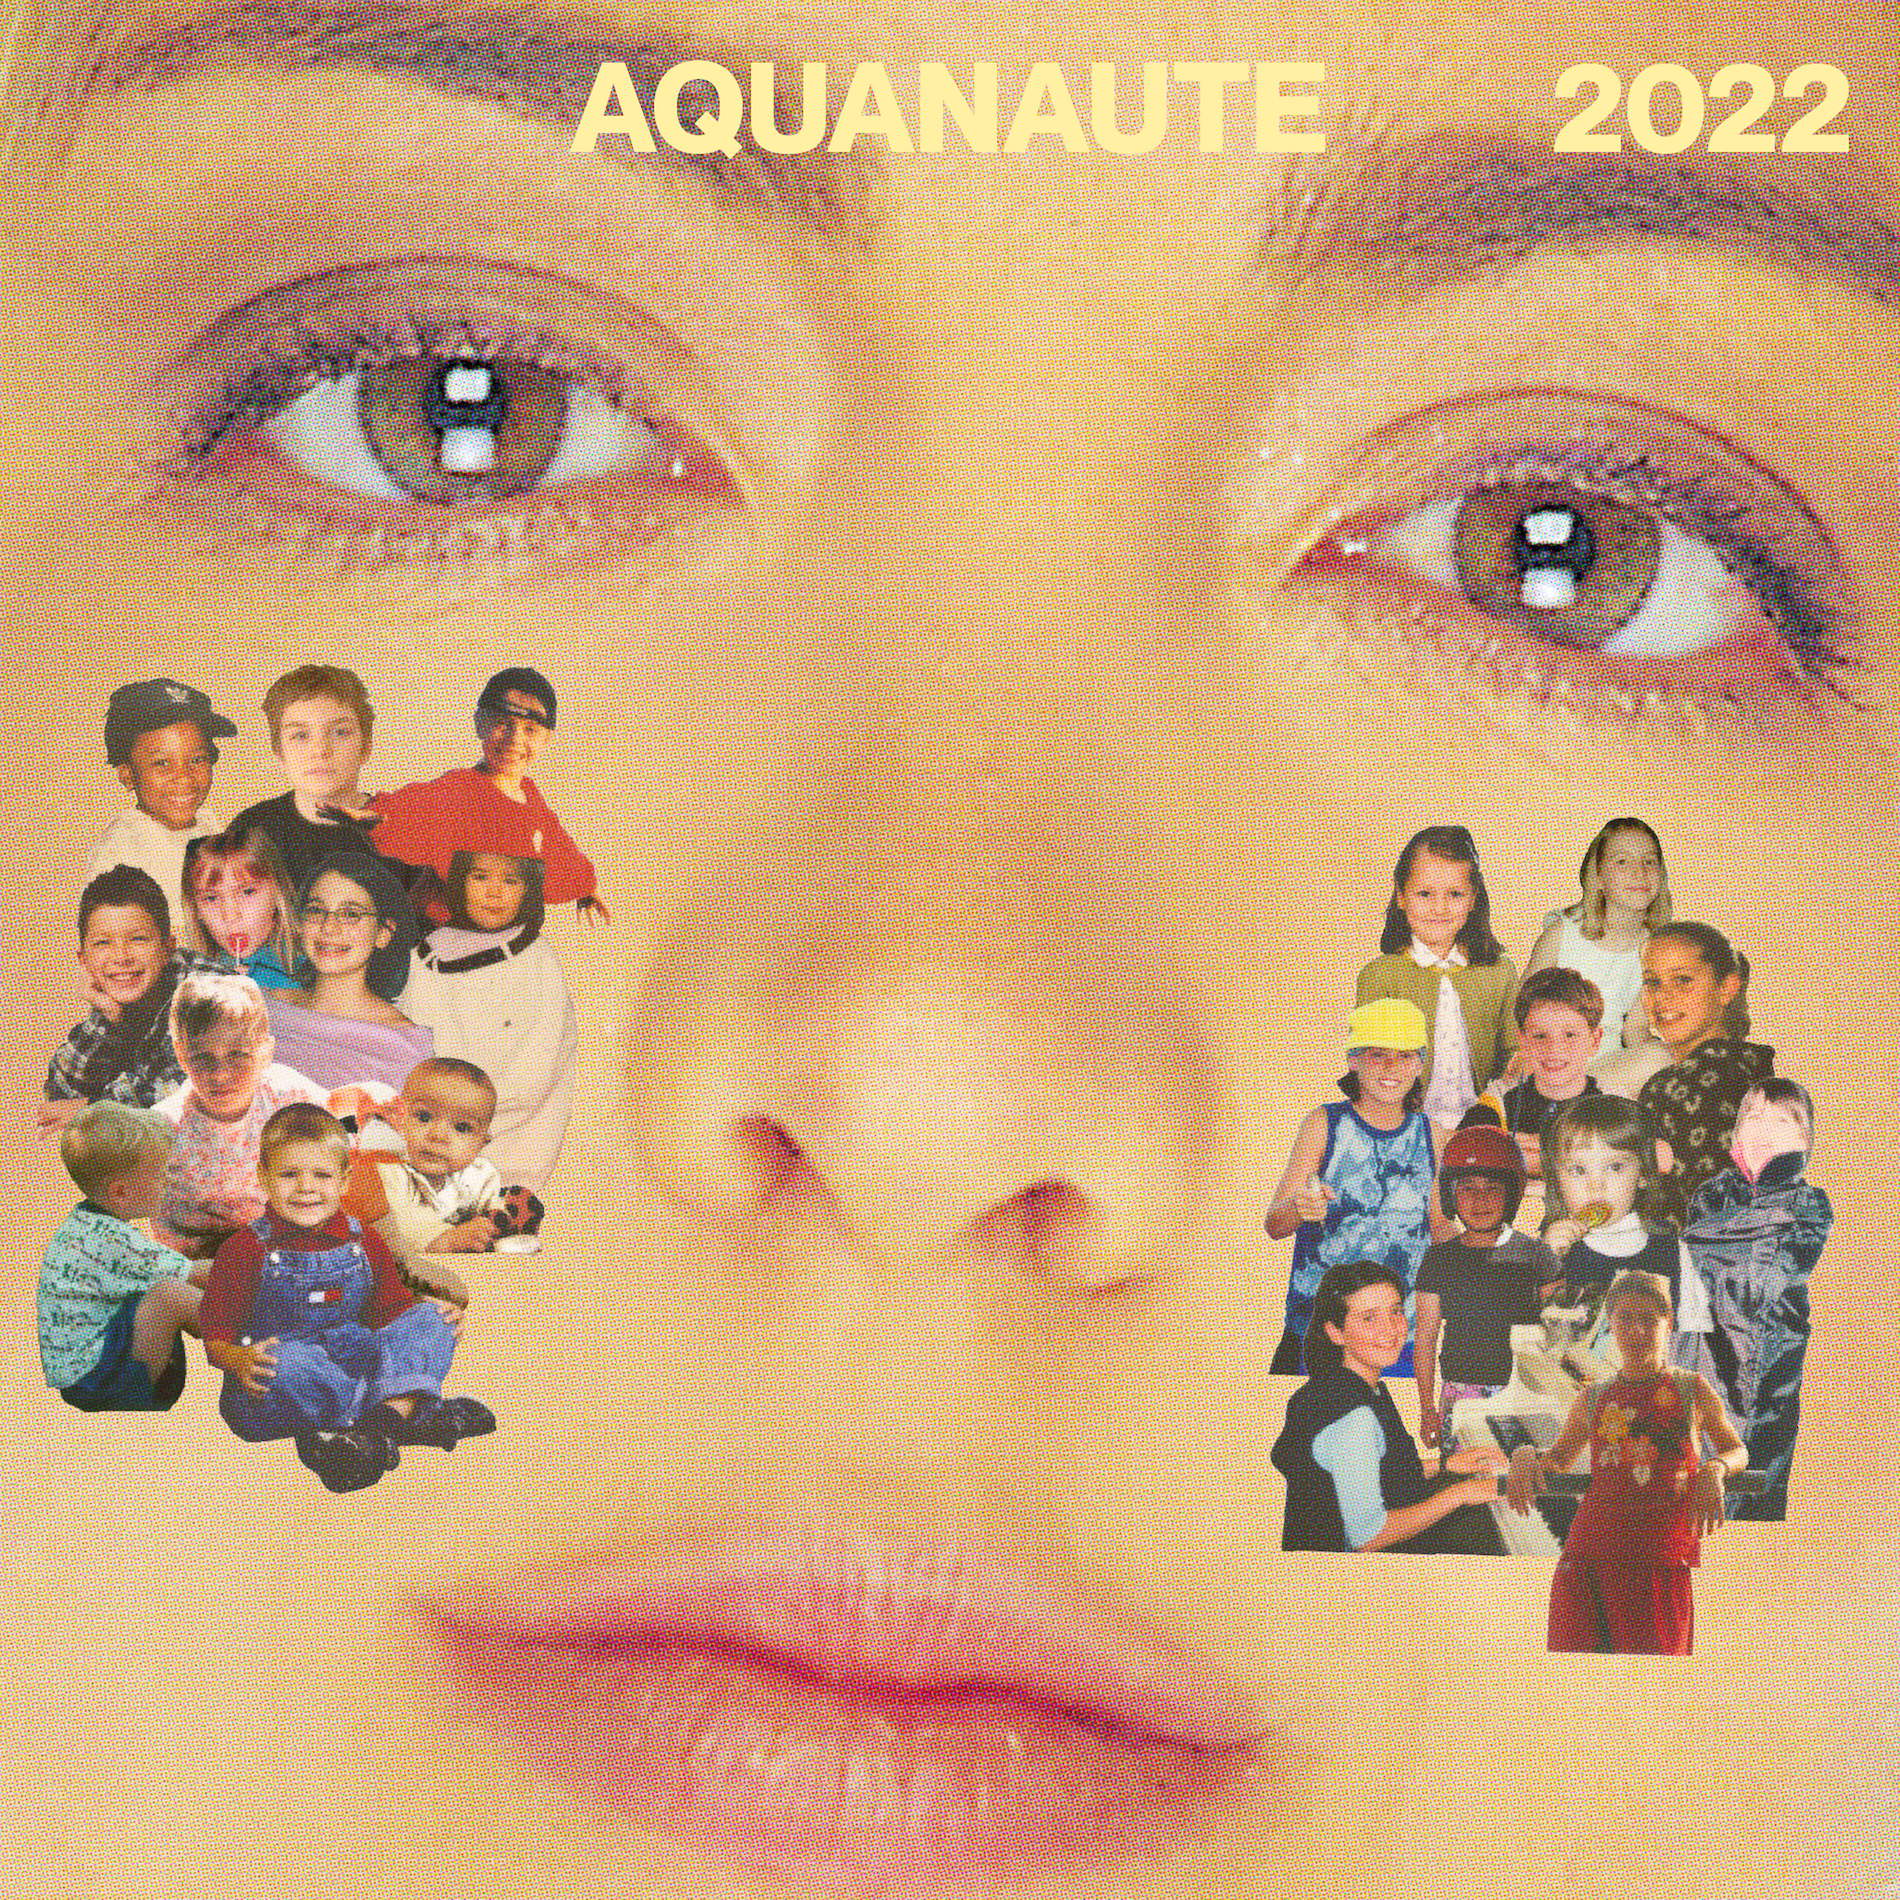 Aquanaute 2022